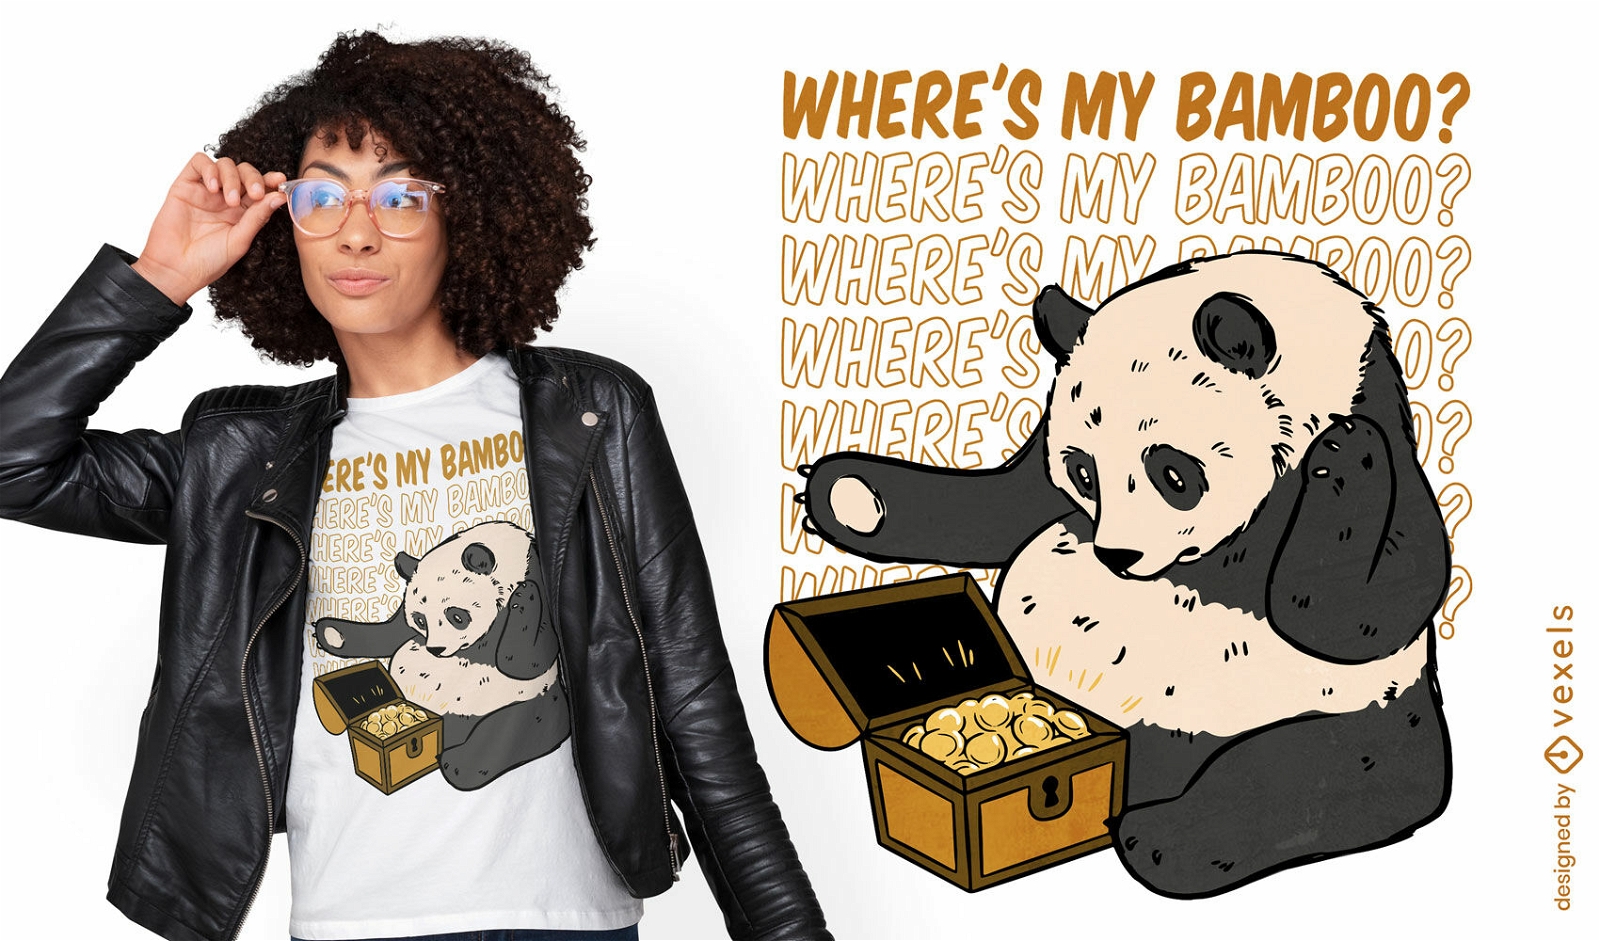 Dise?o de camiseta de bamb? panda confundido